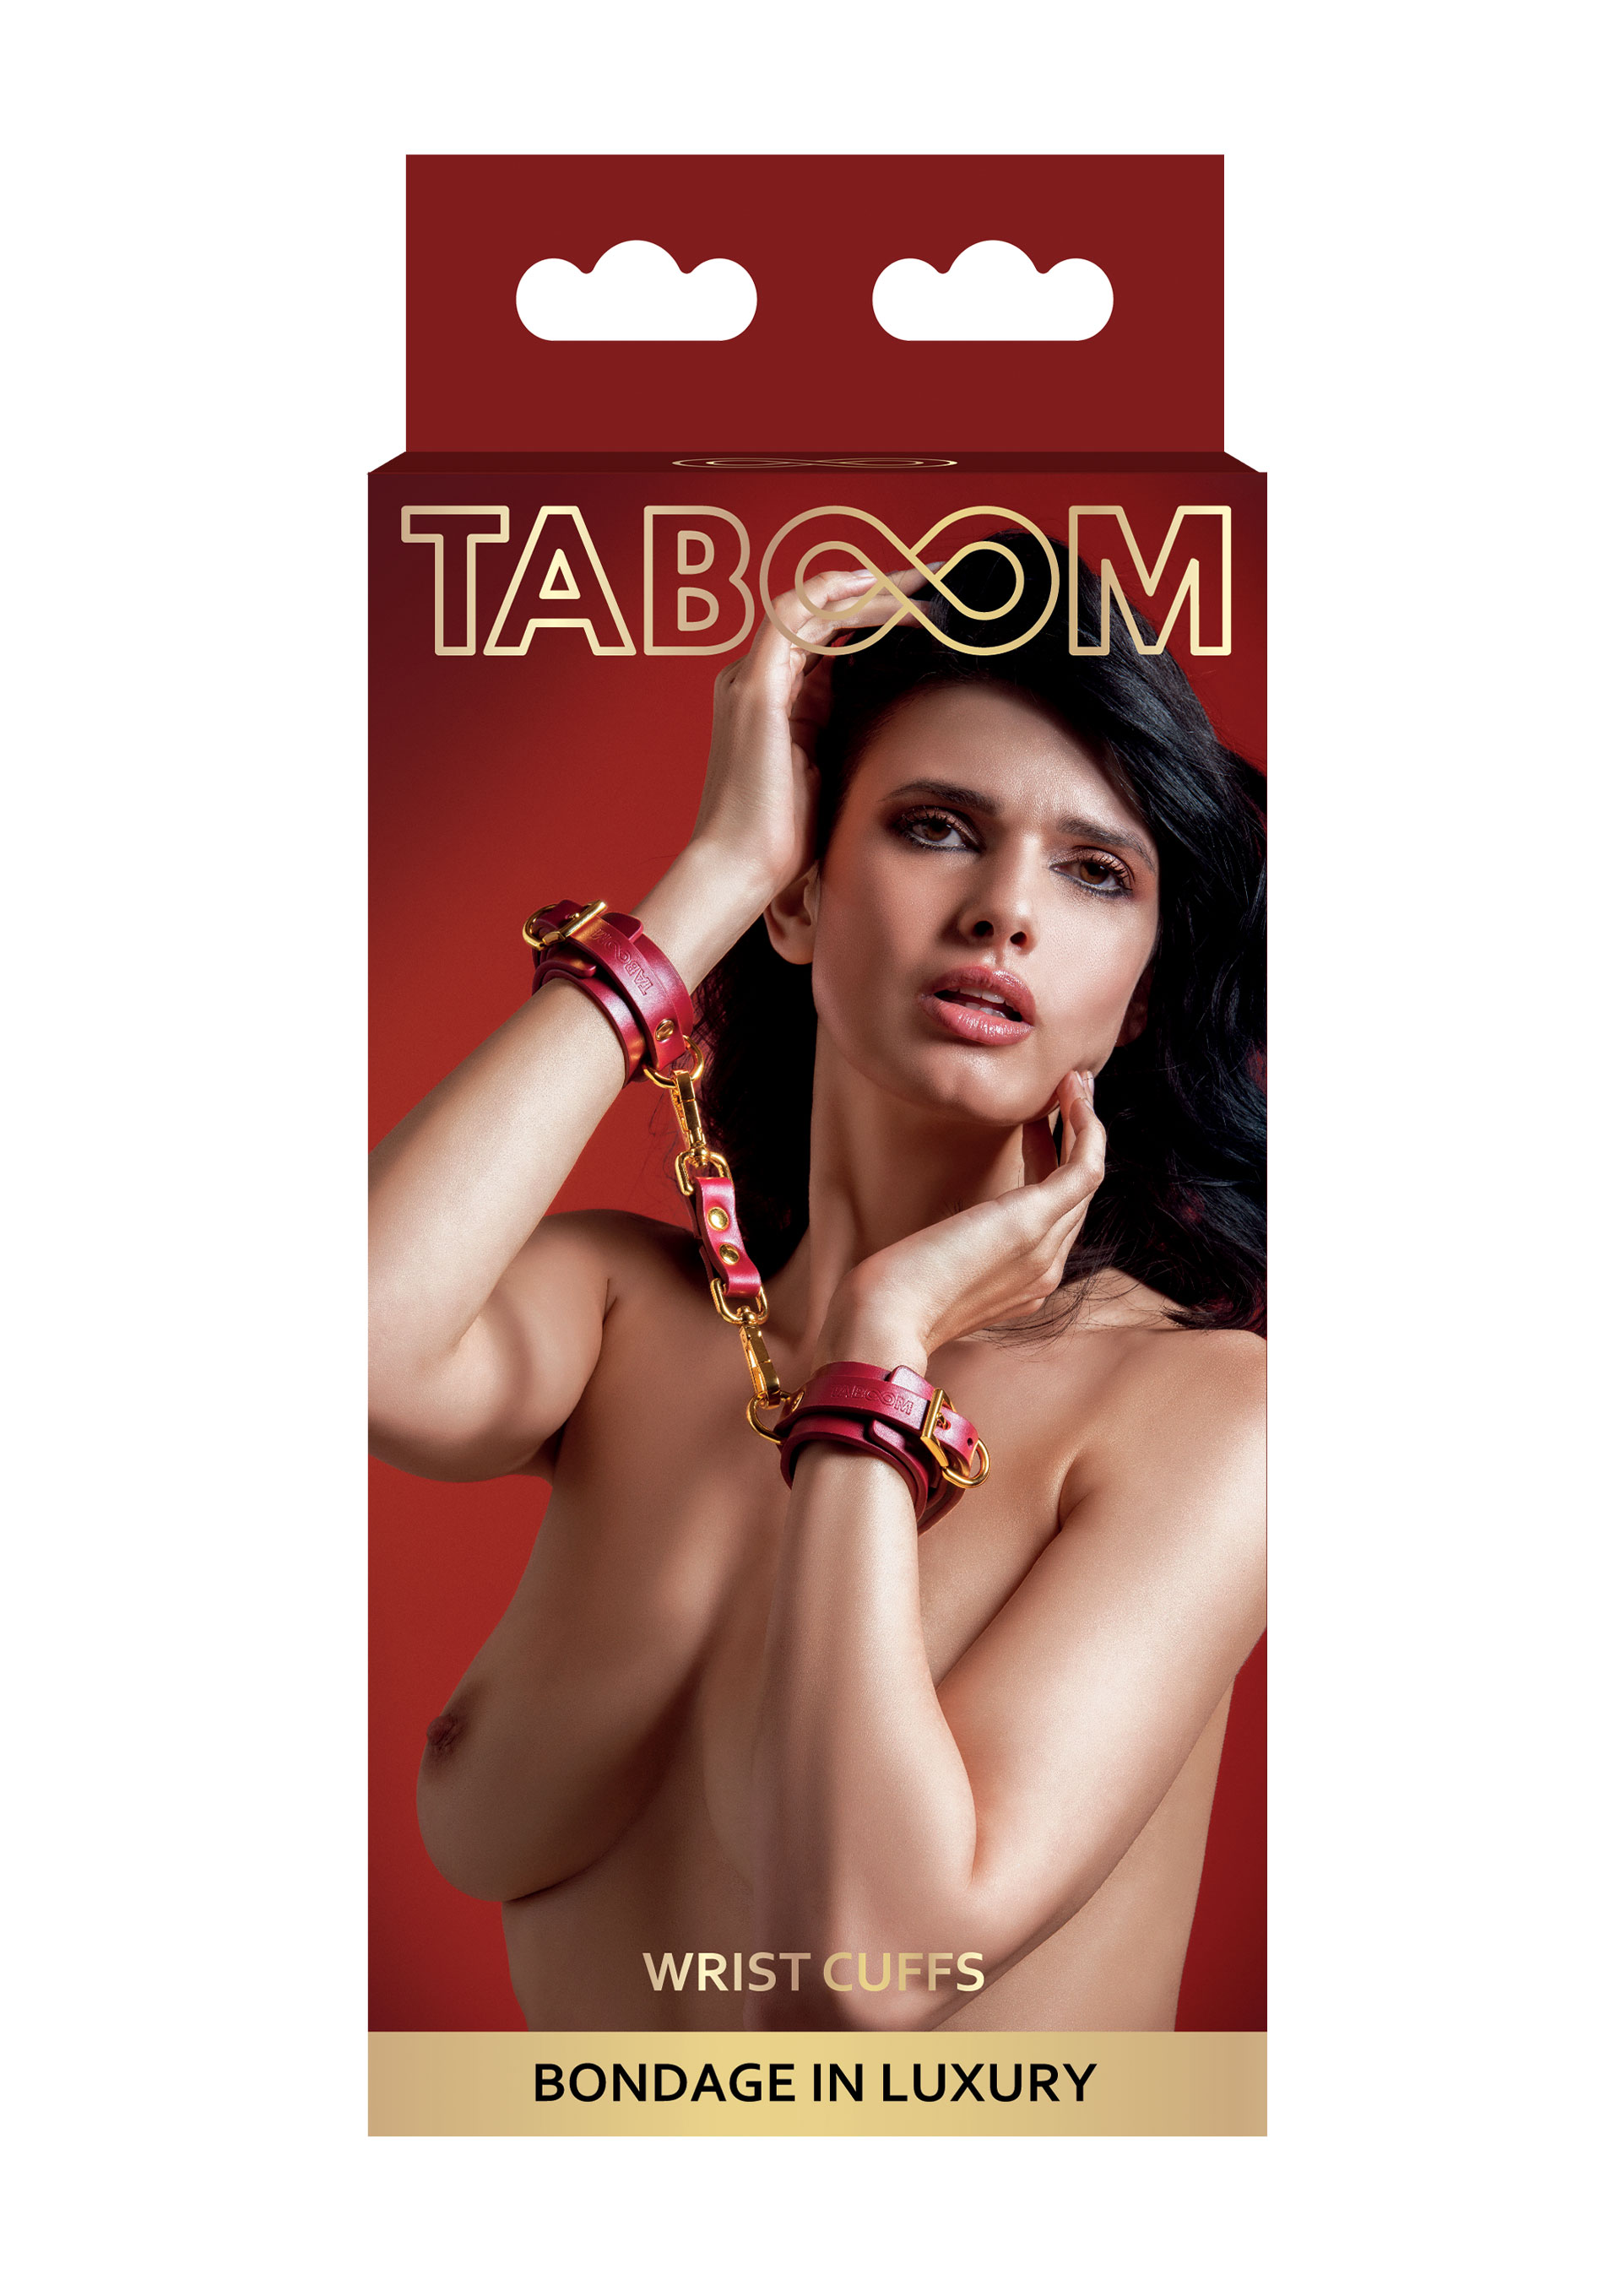 Taboom - Taboom Wrist Cuffs